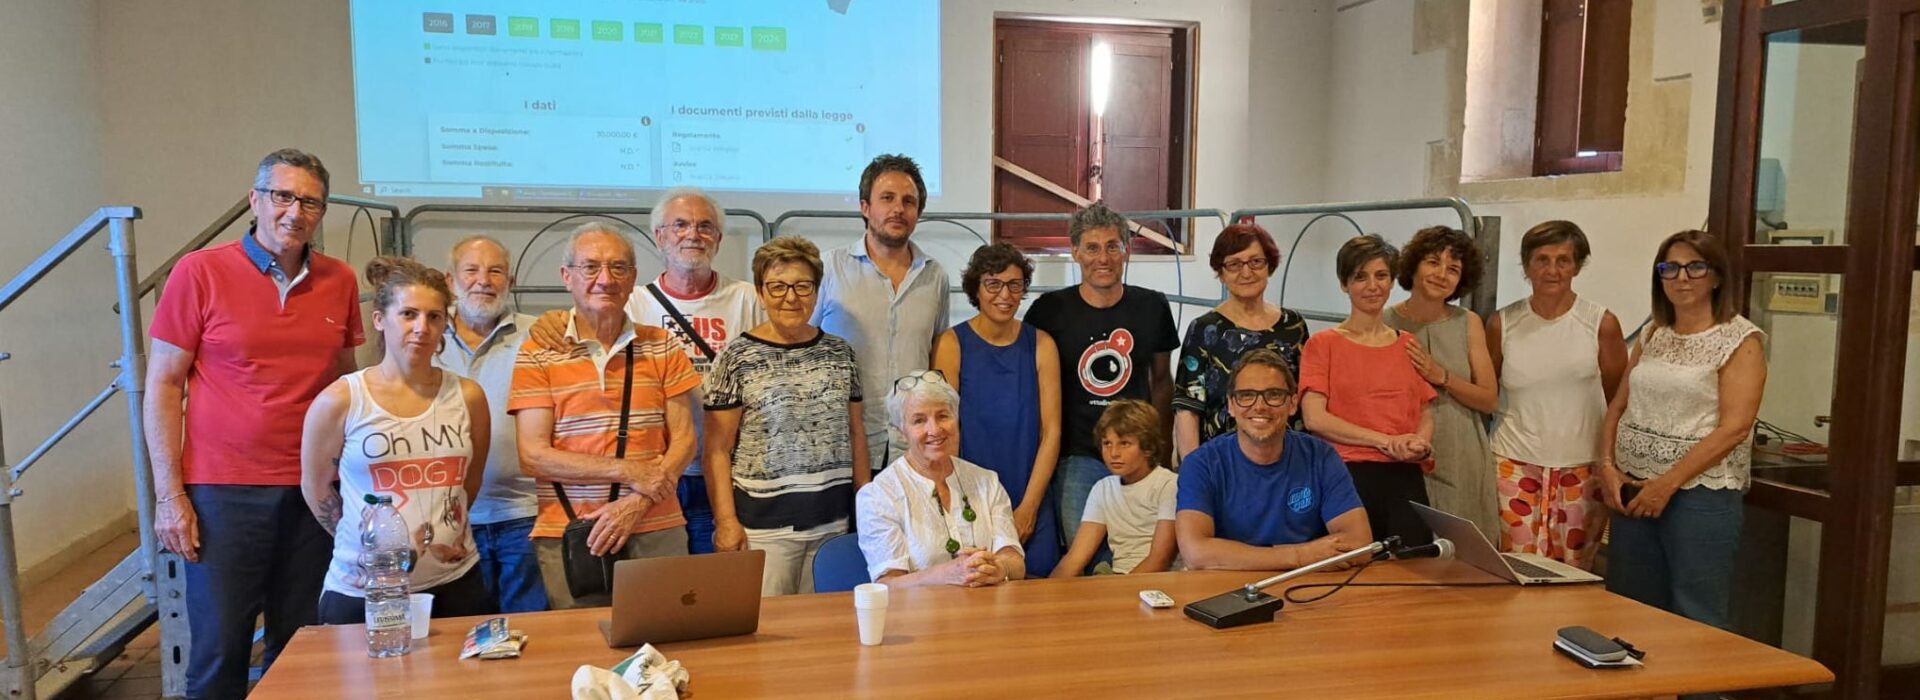 Democrazia partecipata ad Avola, tante le proposte emerse durante l’incontro di co-progettazione